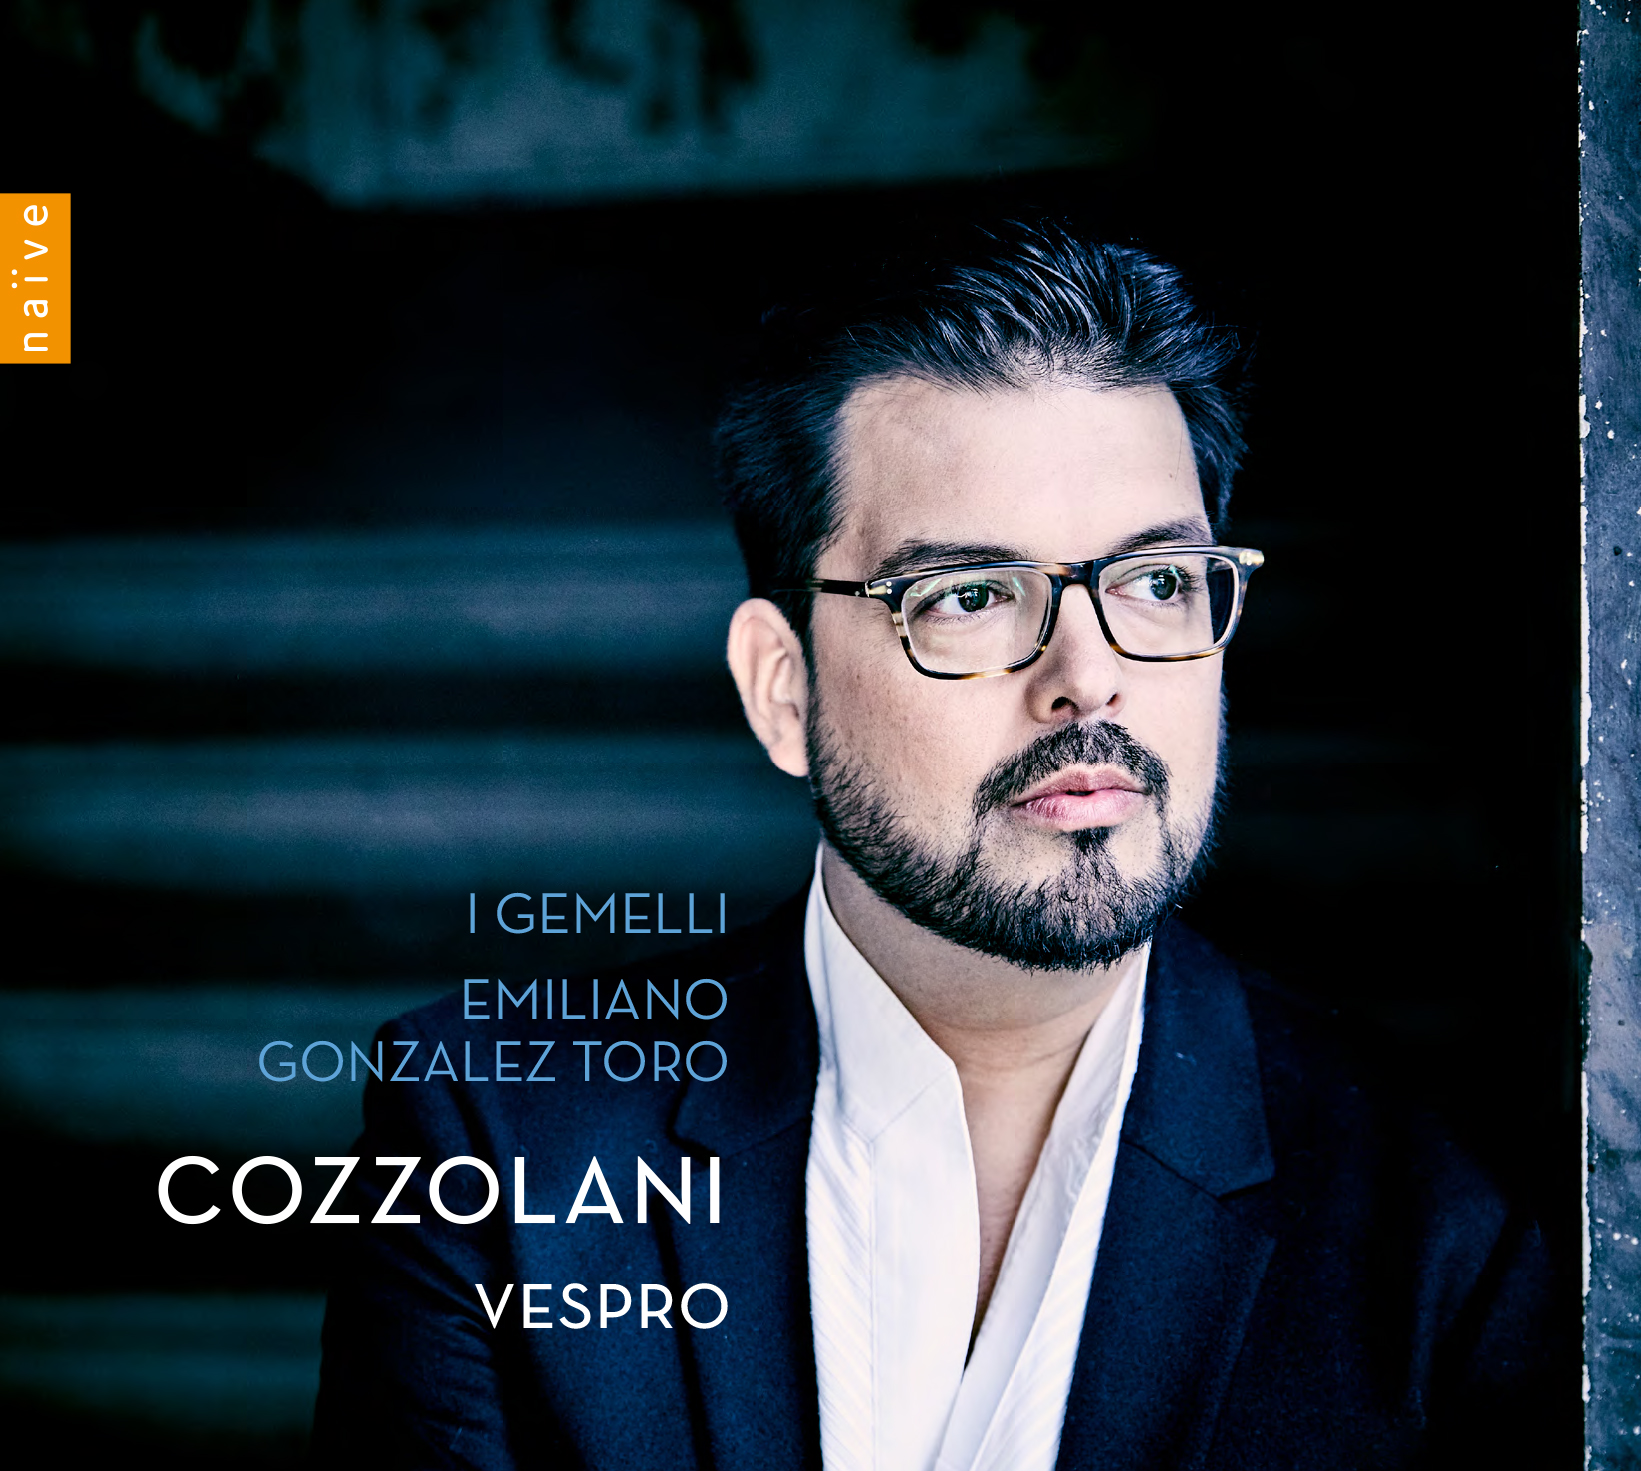 Cozzolani: Vespro (2019)